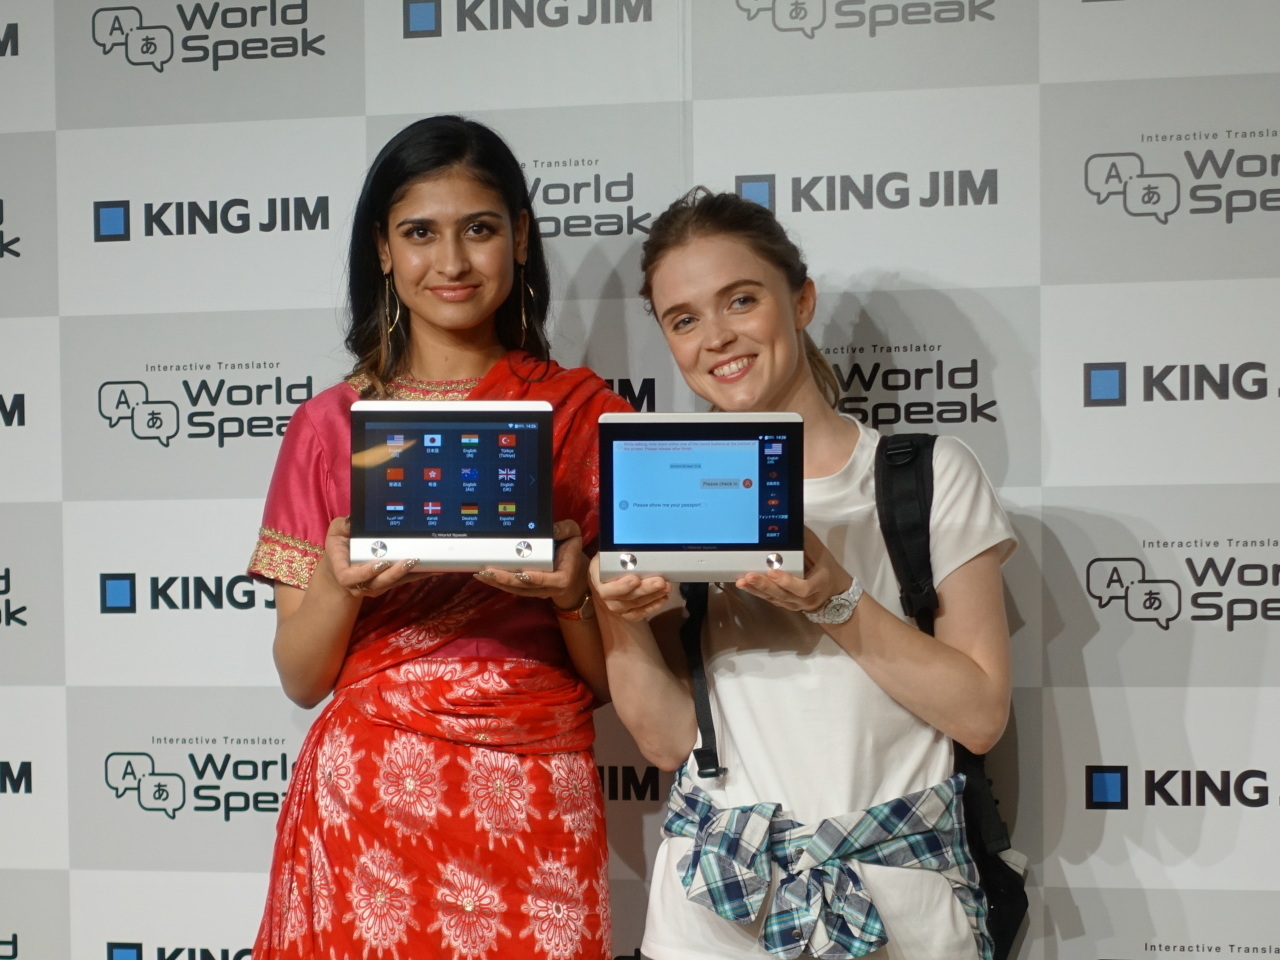 キングジム、世界72言語に対応した2台1組の対話型翻訳機「ワールド ...